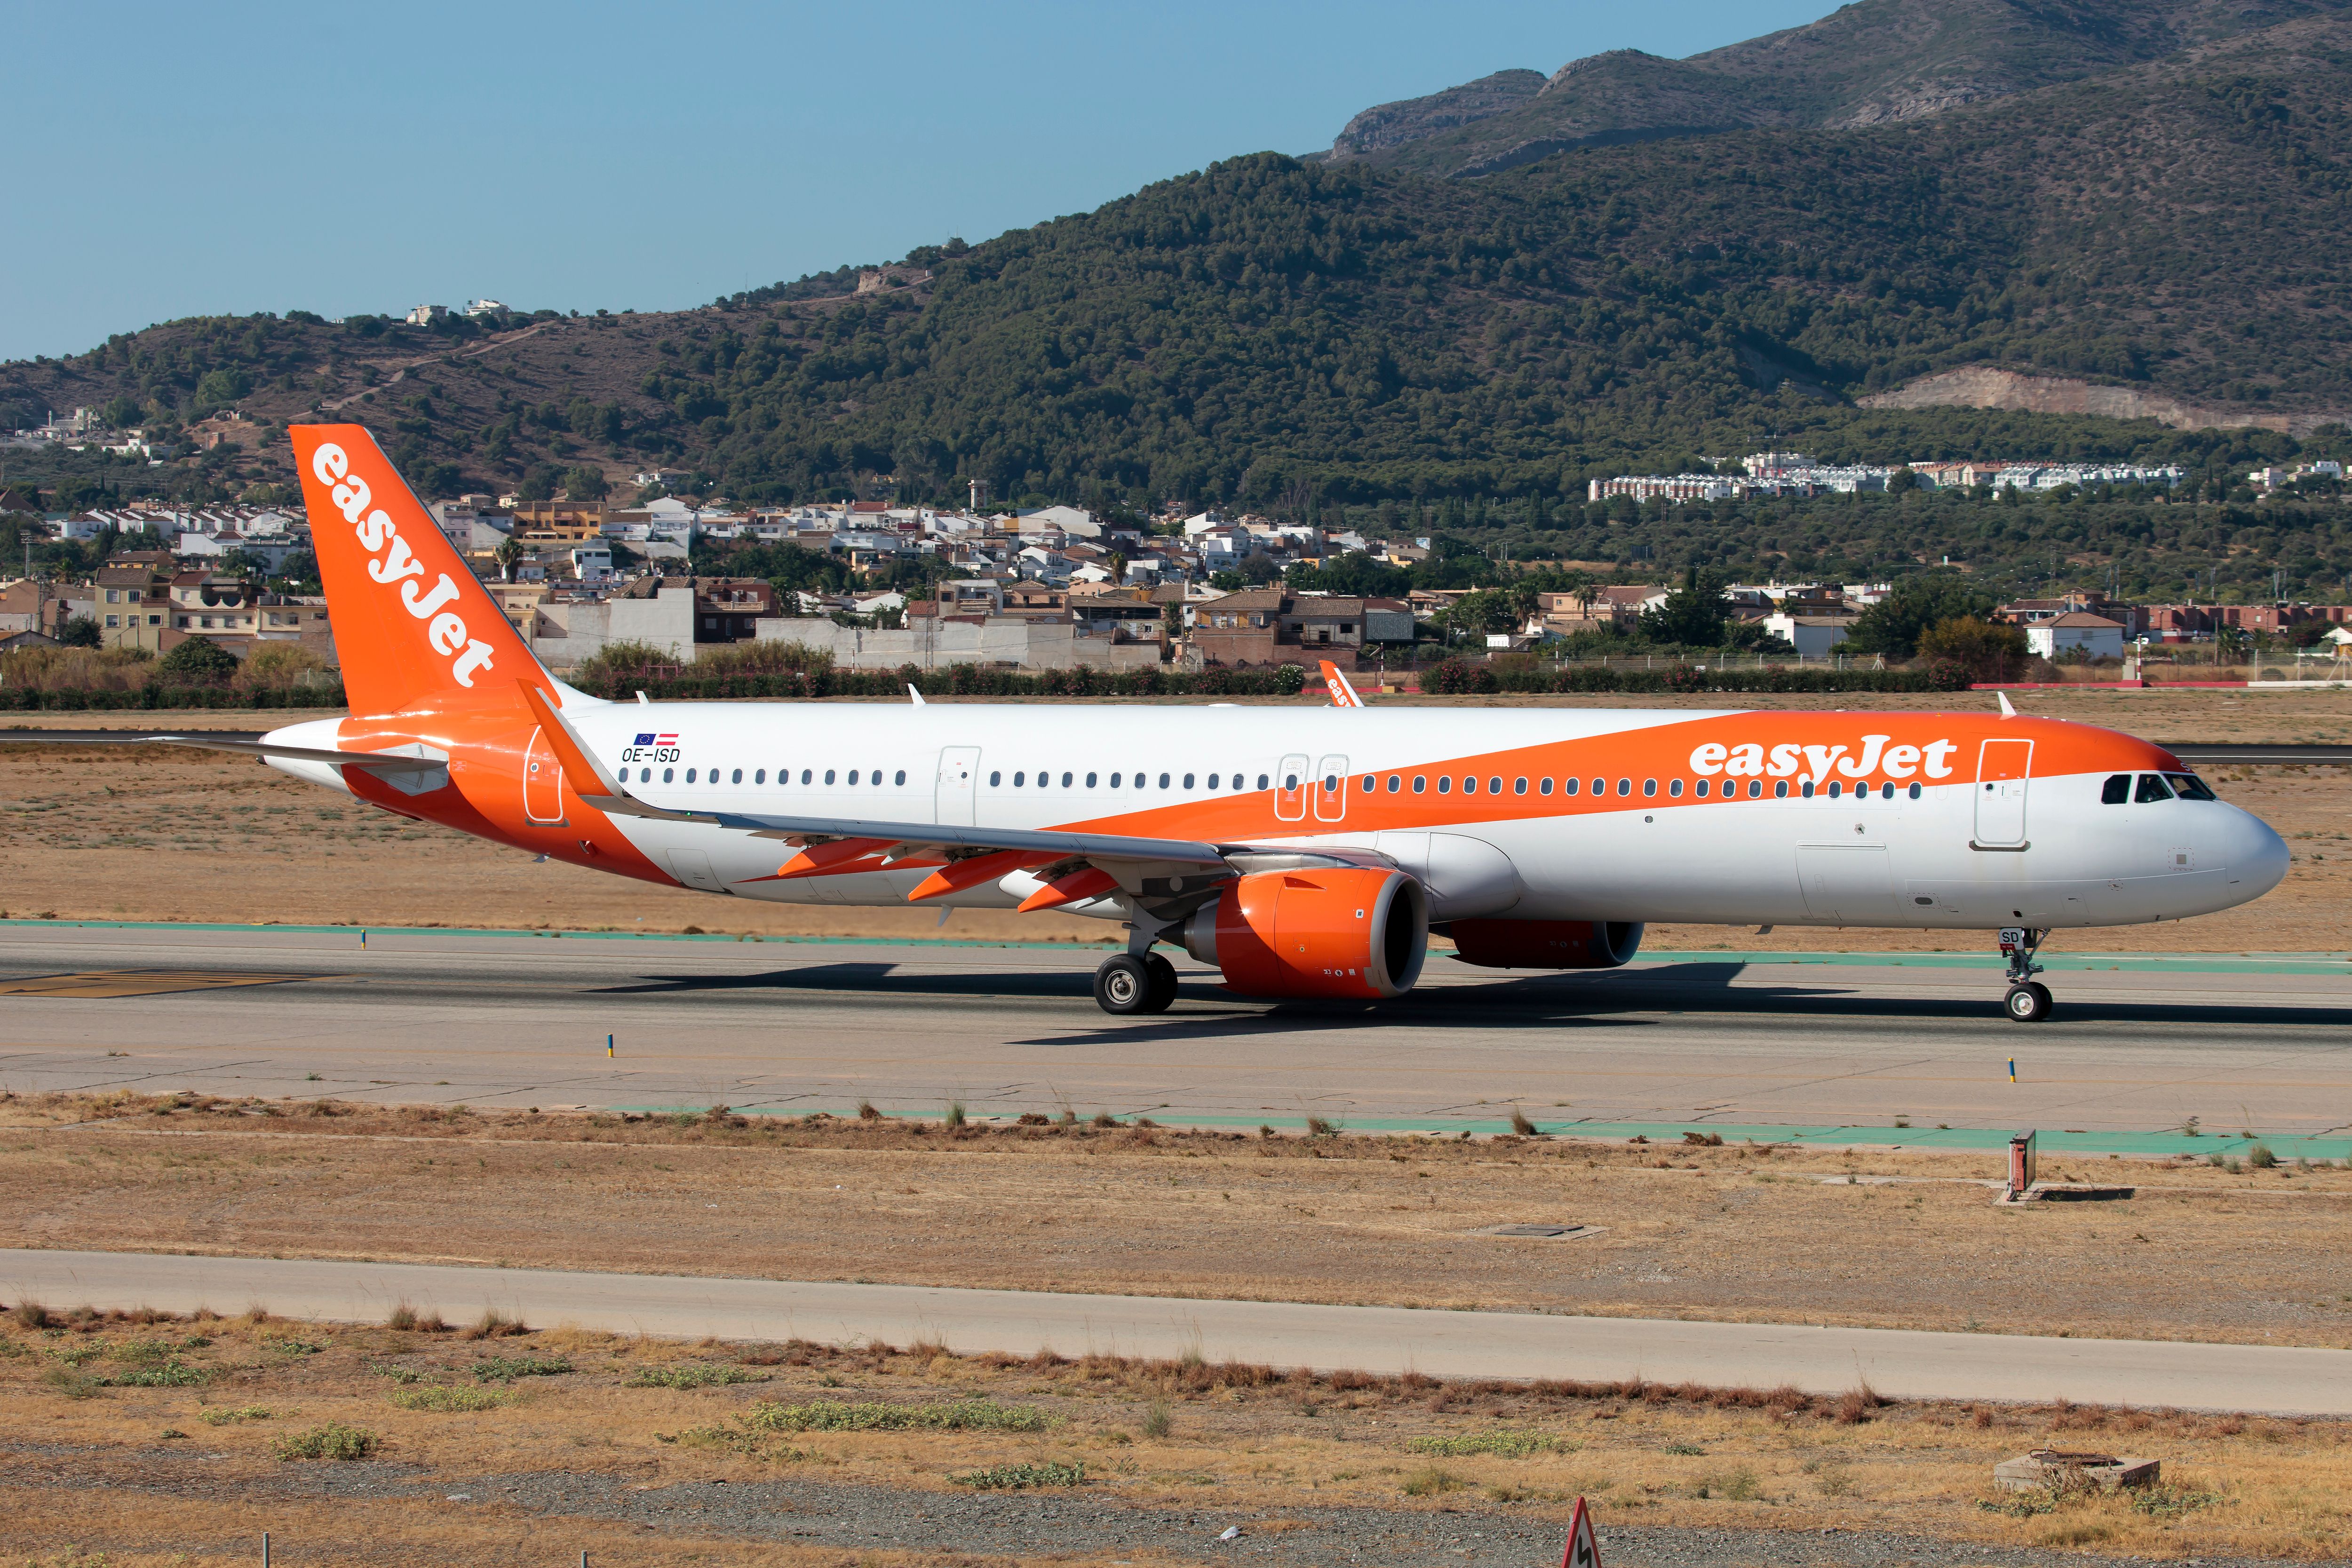 easyjet A320neo on runway in Spain